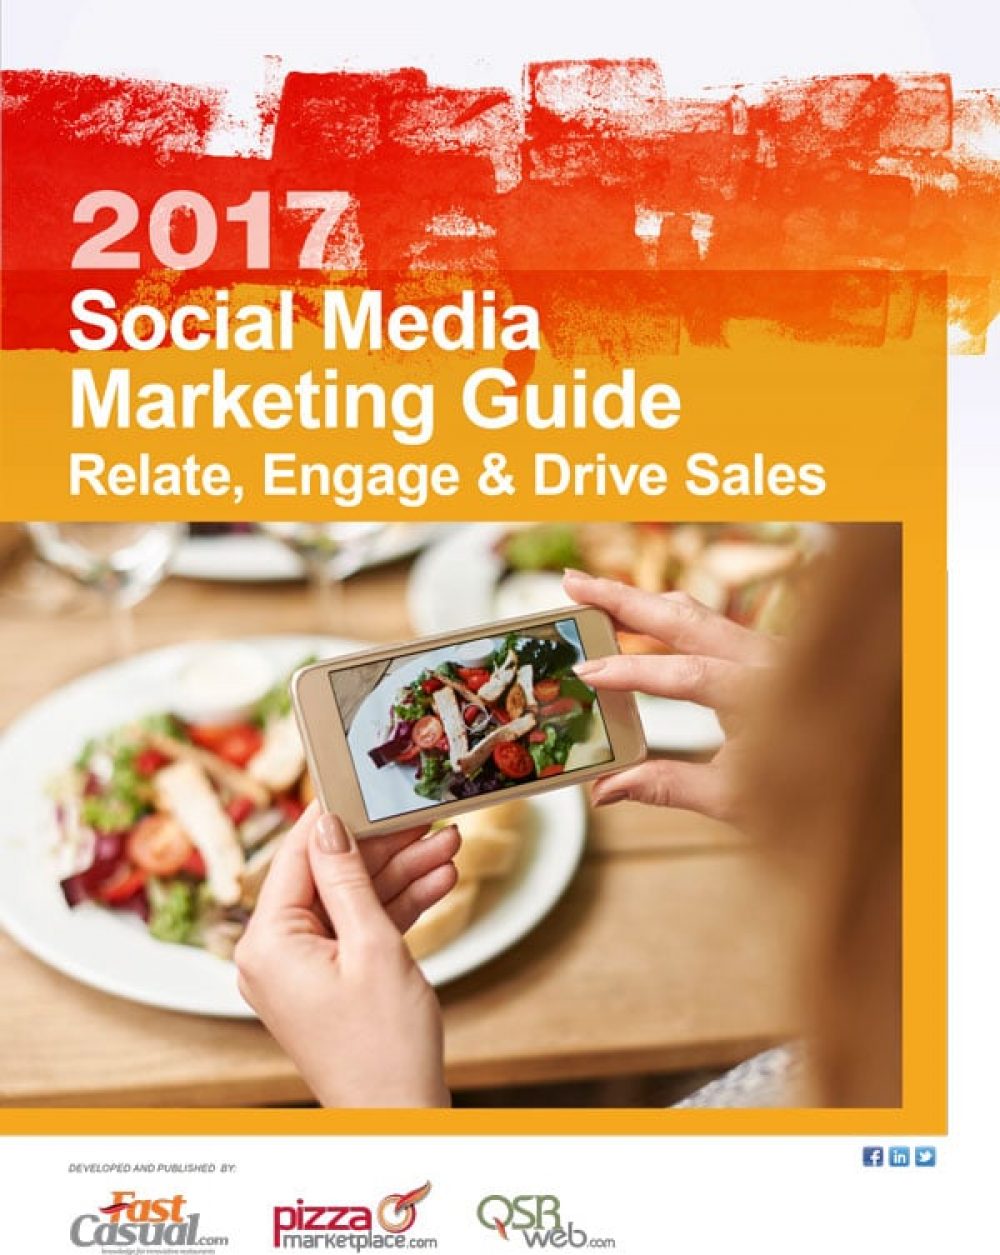 Social Media Marketing for Restaurants